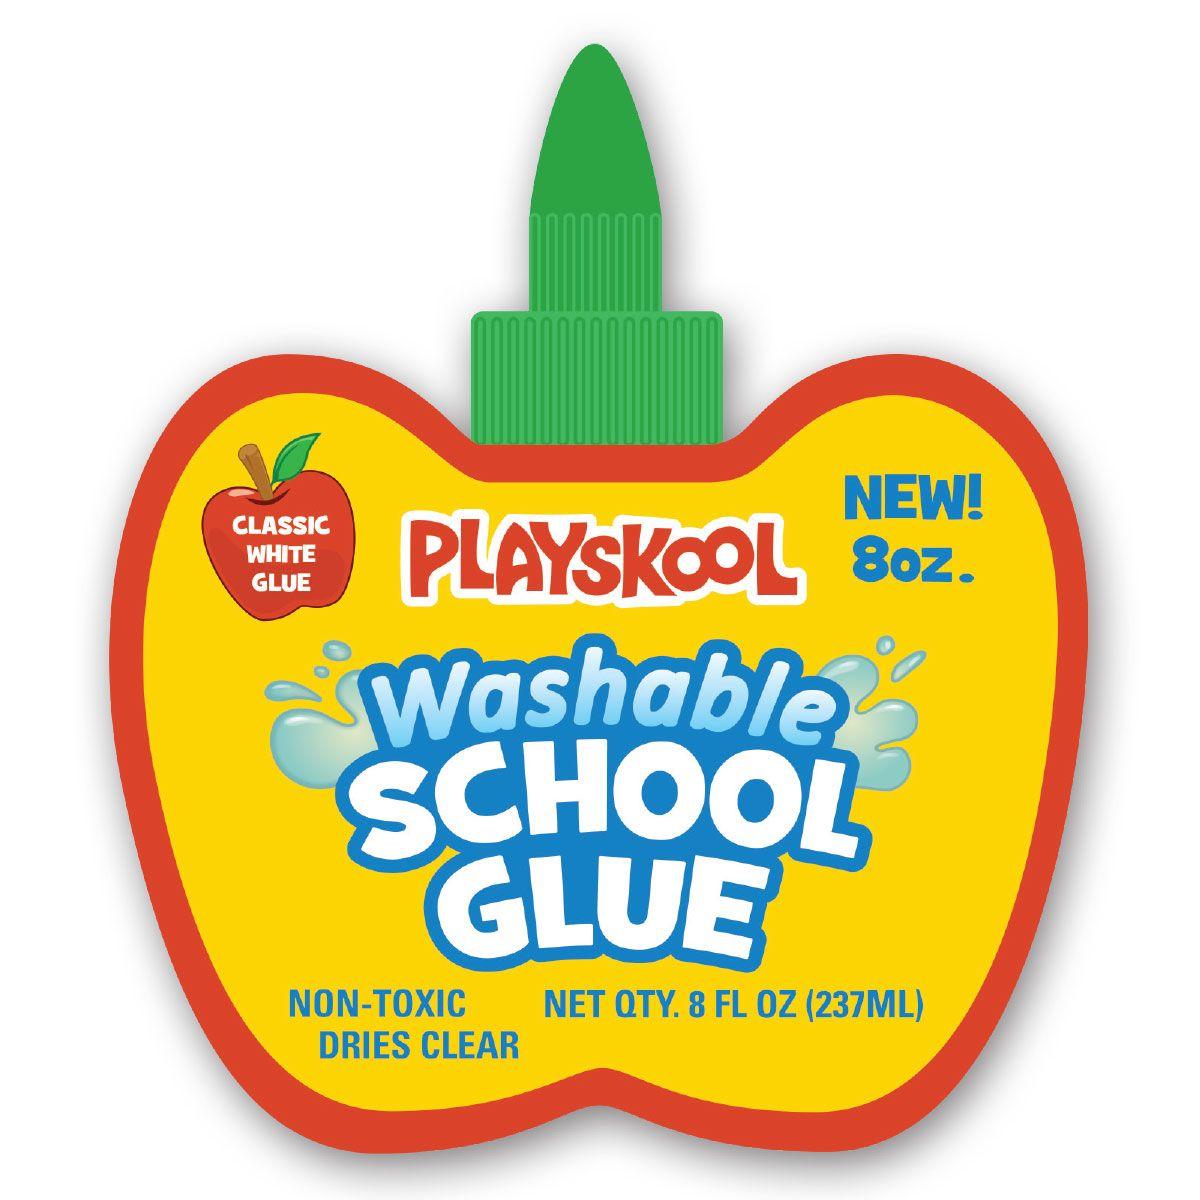 Playskool Logo - Playskool Washable 8 Oz Apple-shaped School Glue – Leap Year Publishing